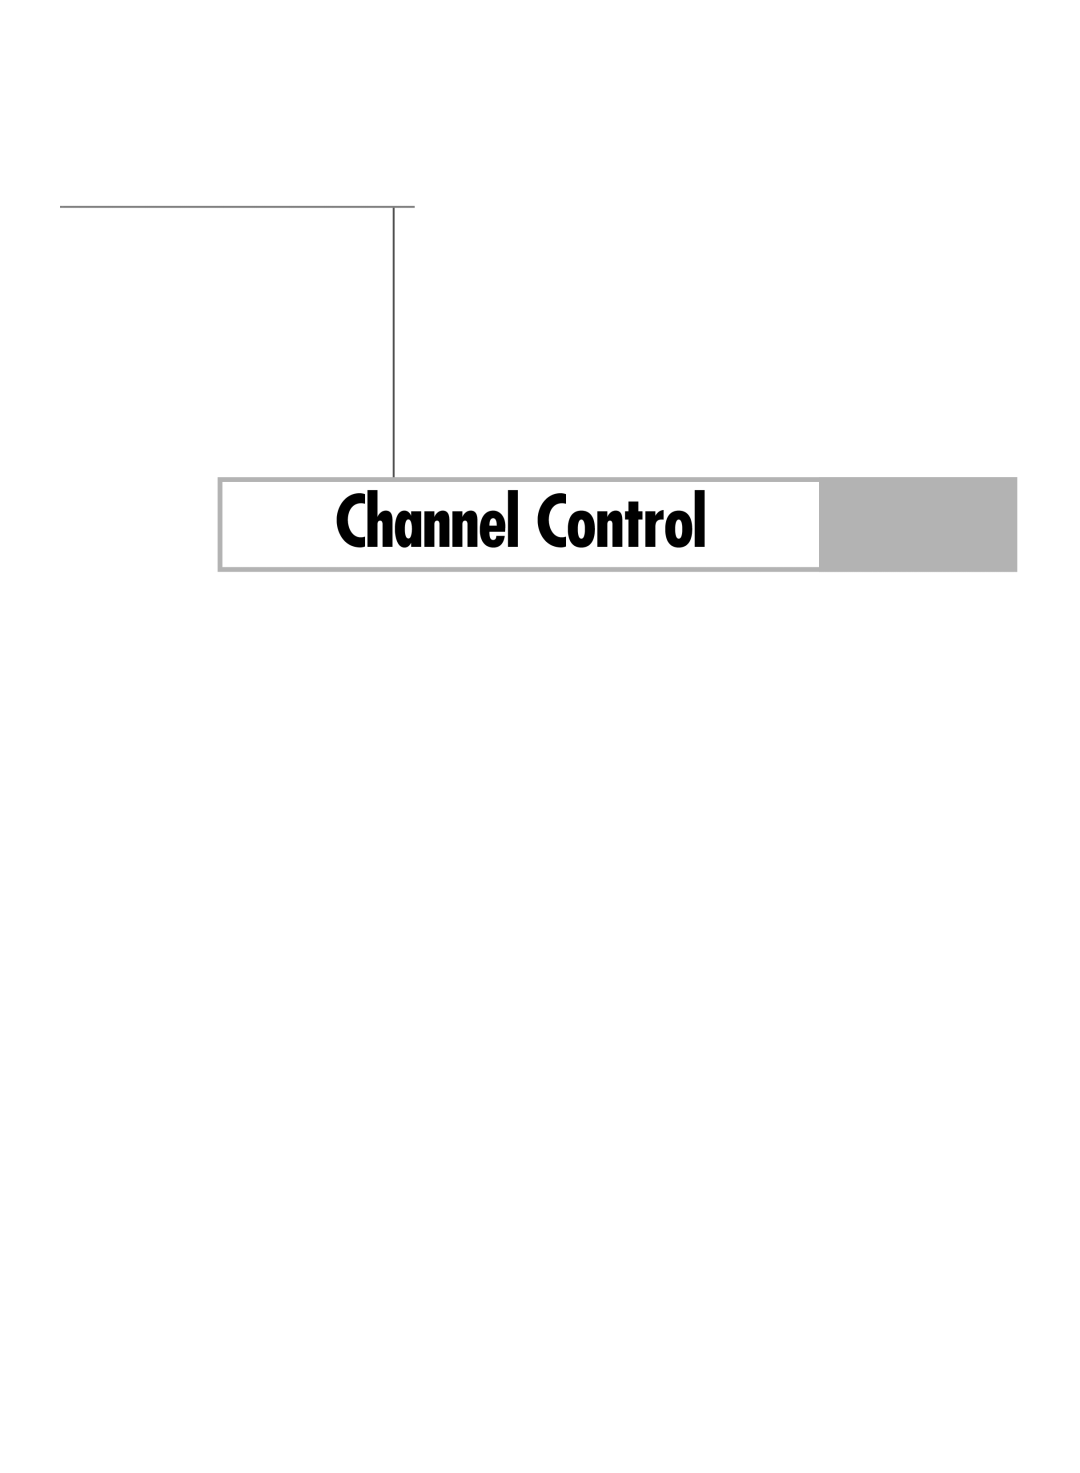 Samsung HL-R6178W, HL-R5678W, HL-R7178W manual Channel Control 